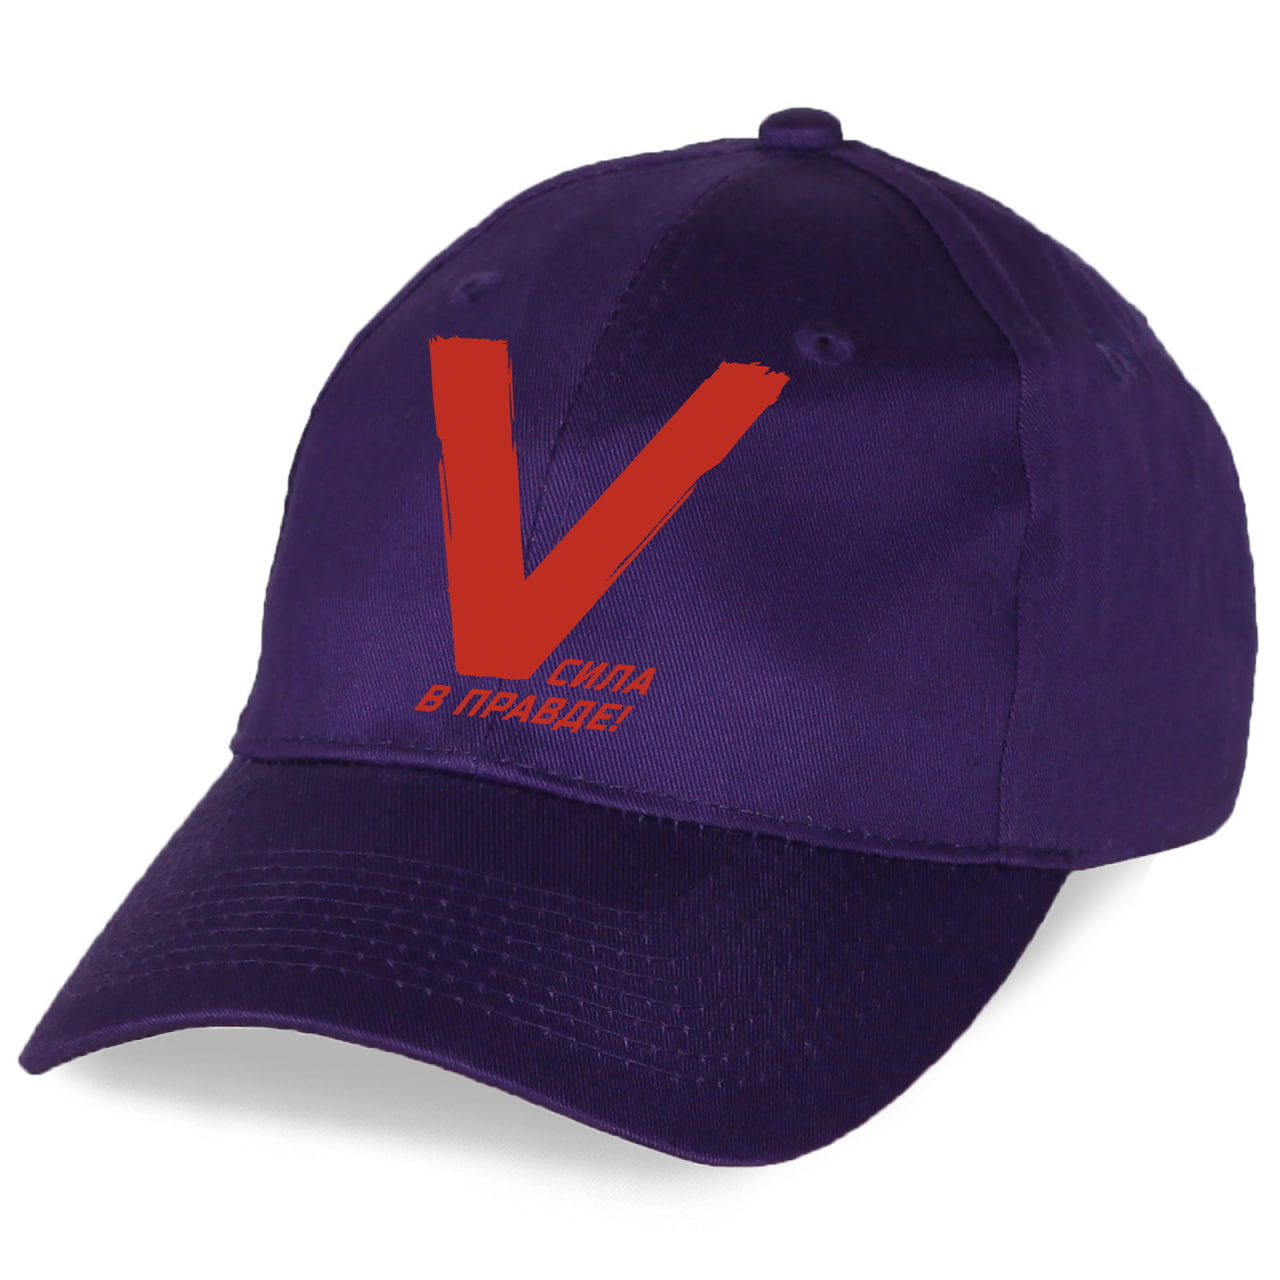 Фиолетоваая кепка V с надписью "Поддержим наших!"